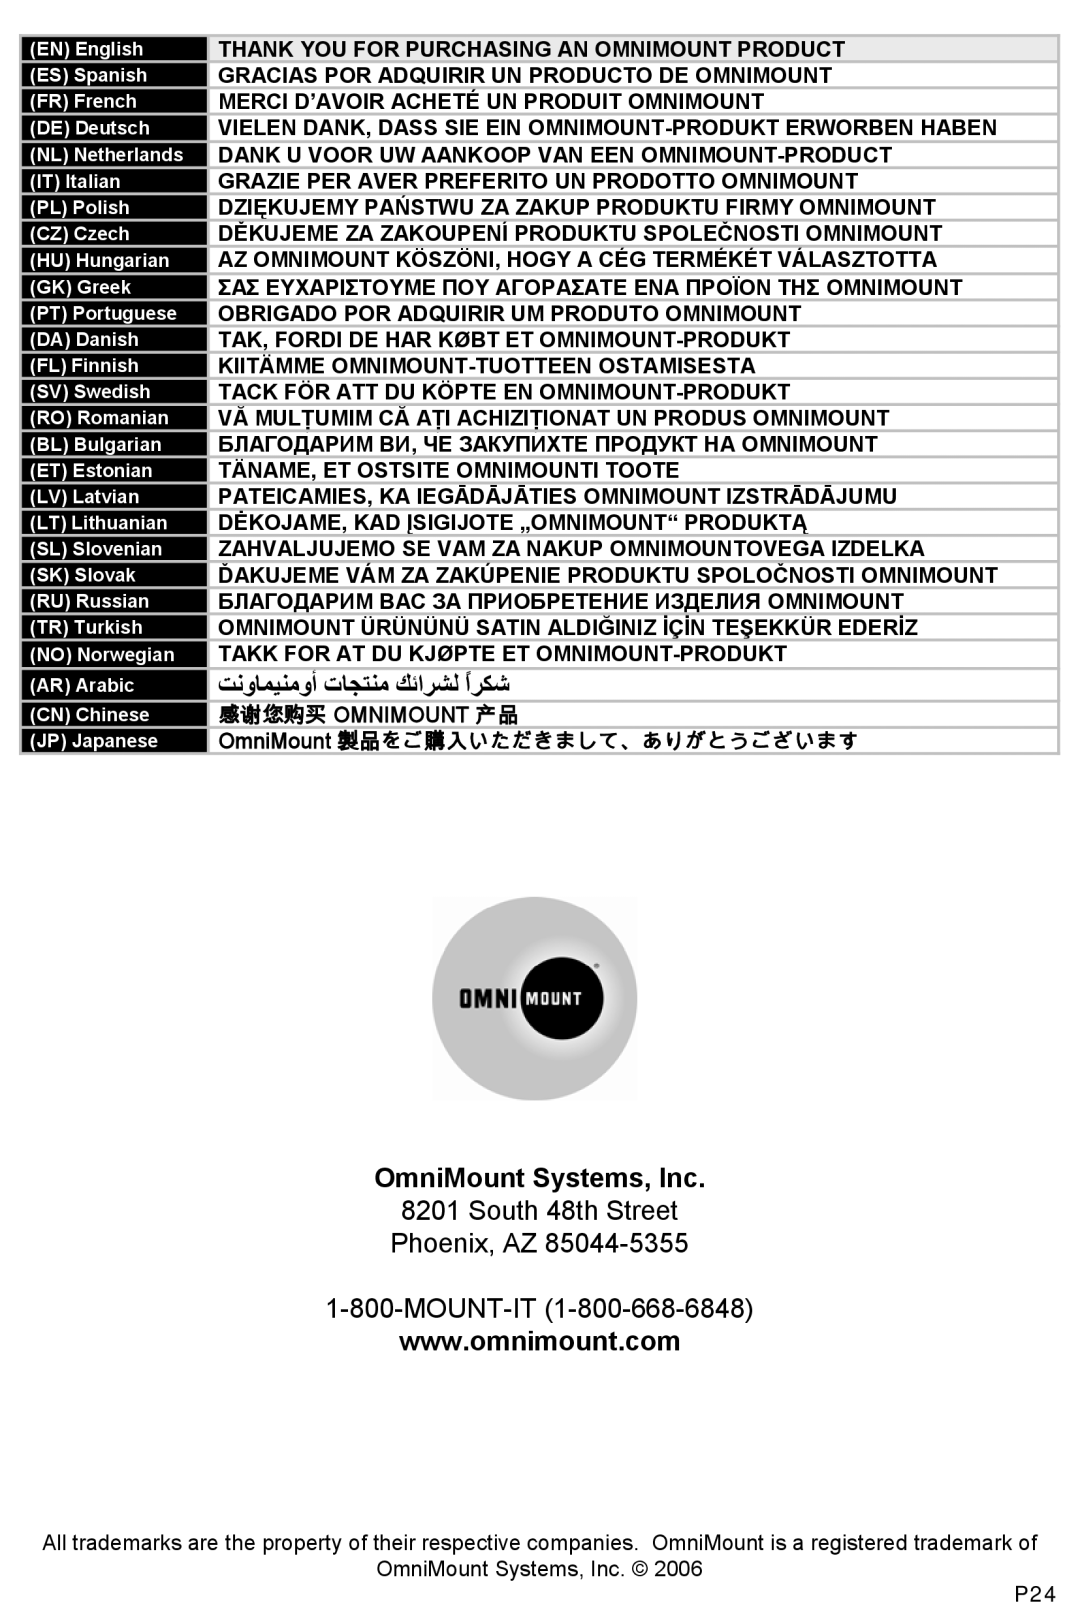 Omnimount MWF8, UL10188 instruction manual ﺖﻧوﺎﻤﻴﻨﻣوأ تﺎﺠﺘﻨﻣ ﻚﺋاﺮﺸﻟ اﺮﻜﺷً, OmniMount Systems, Inc 